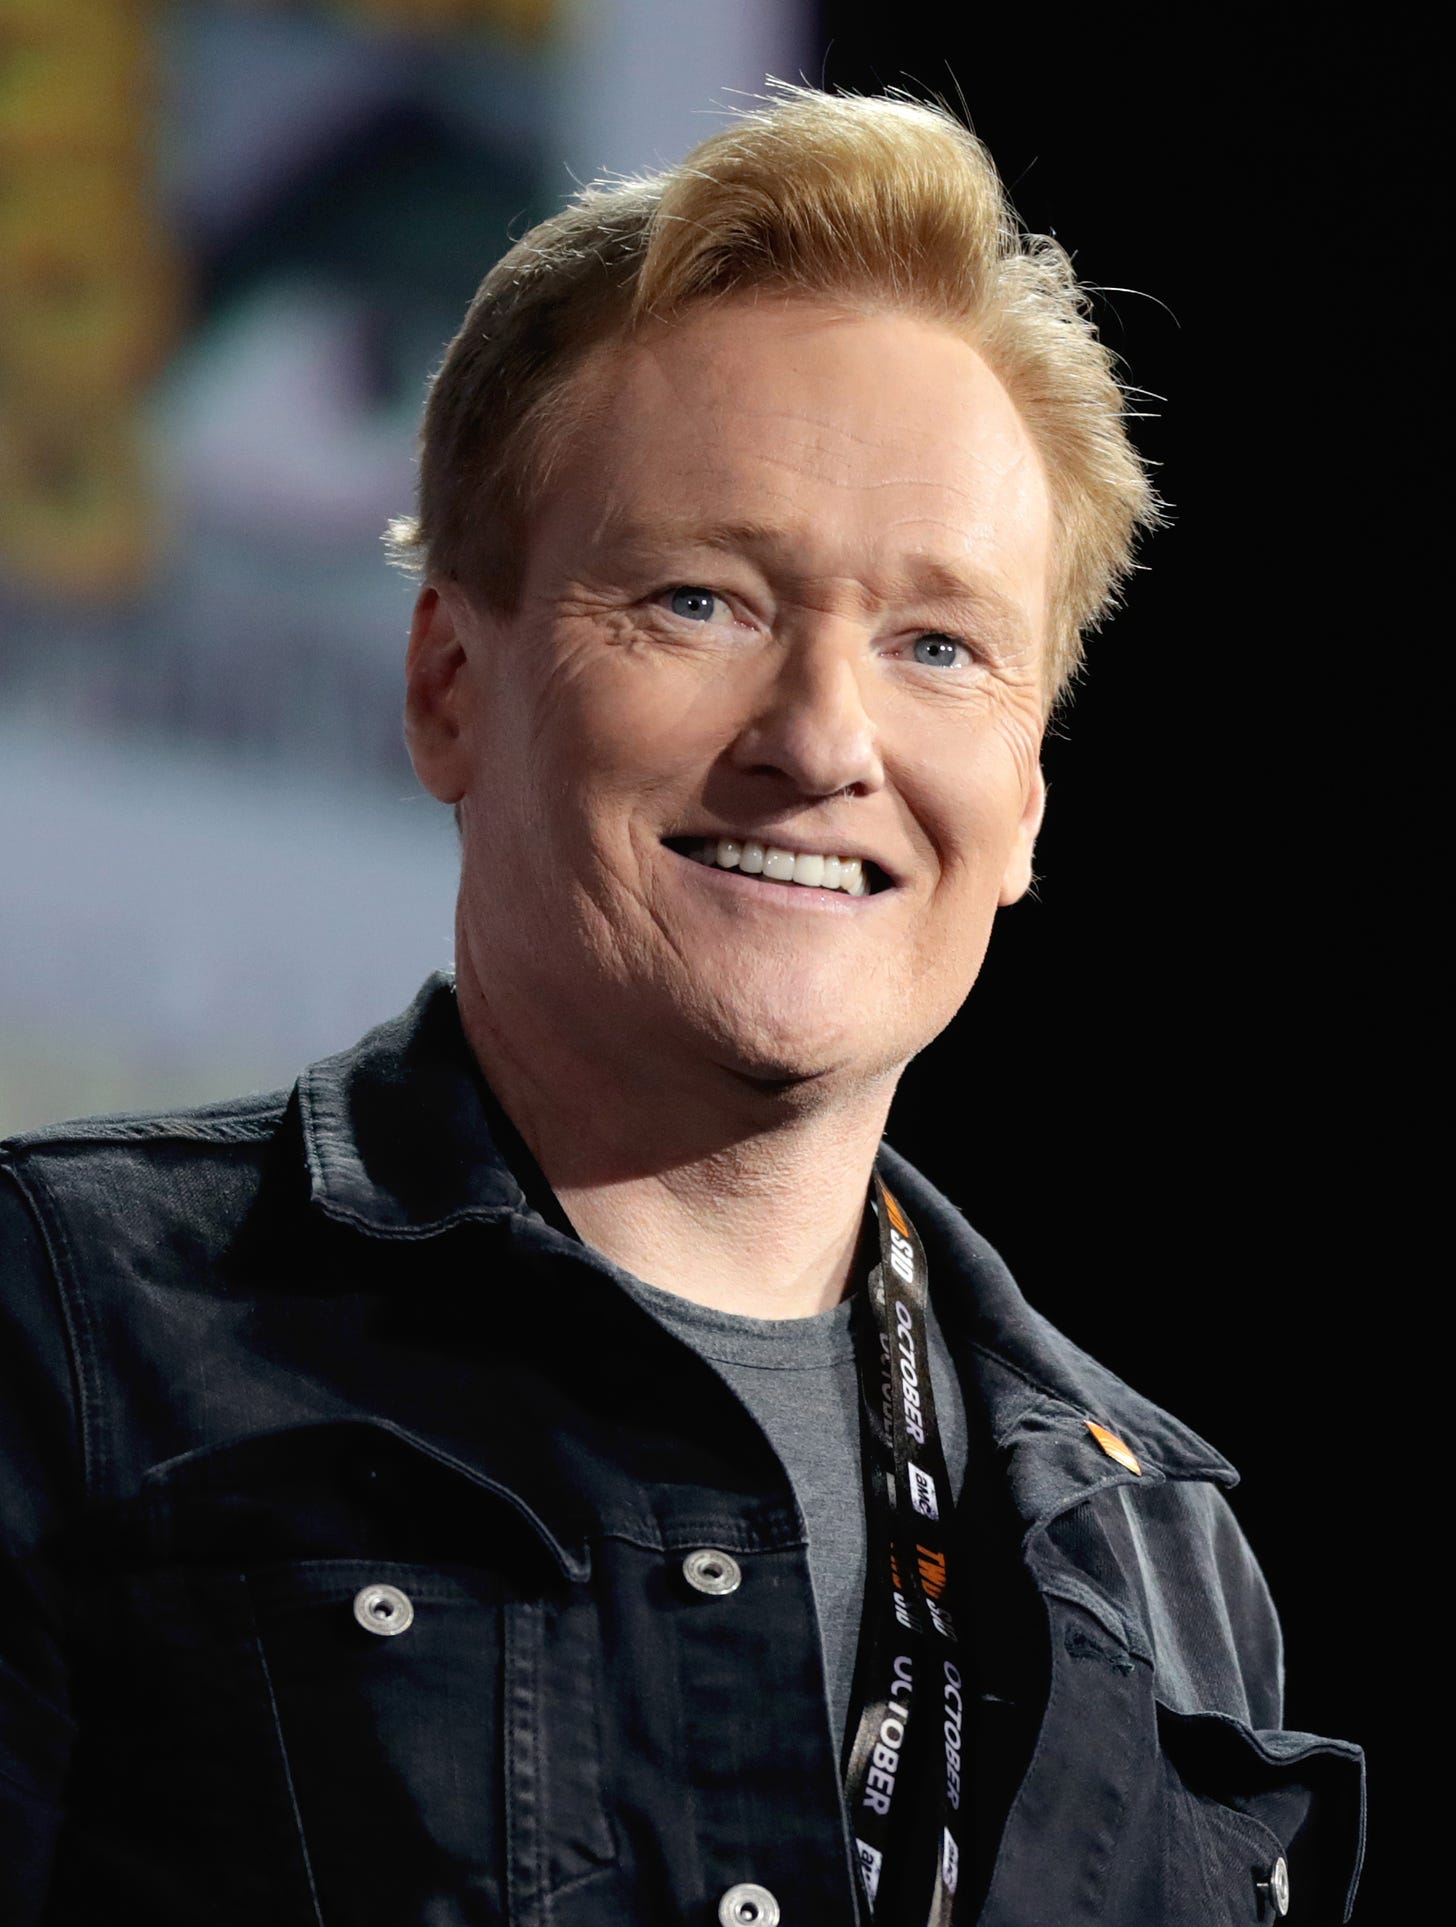 Conan O'Brien - Wikipedia